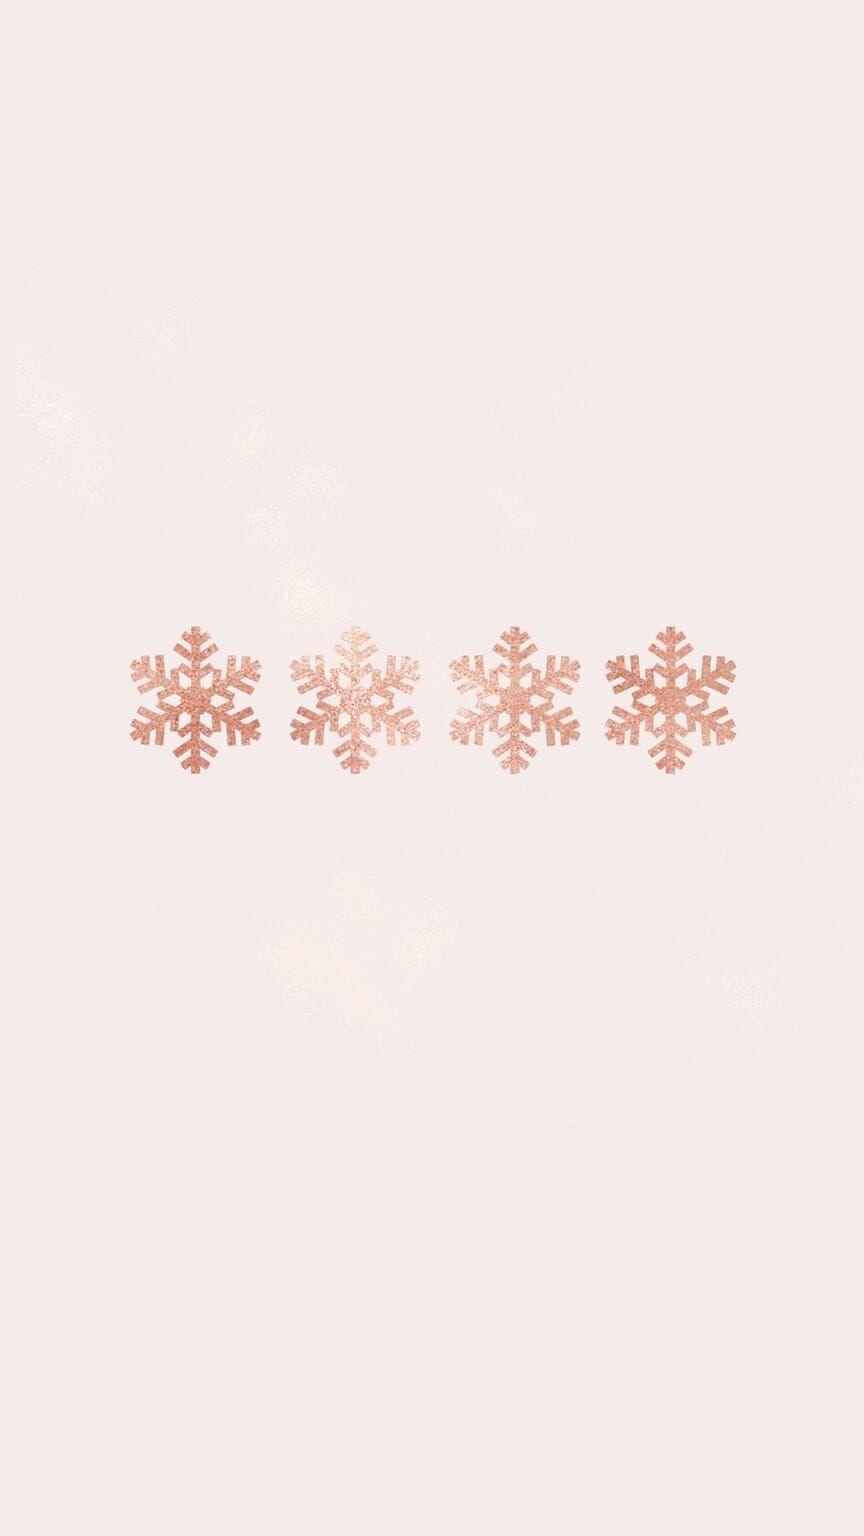 Aesthetic Christmas Wallpaper Background For iPhone (Free!). Papéis de parede de inverno, iPhone de fundo, Cenário natal